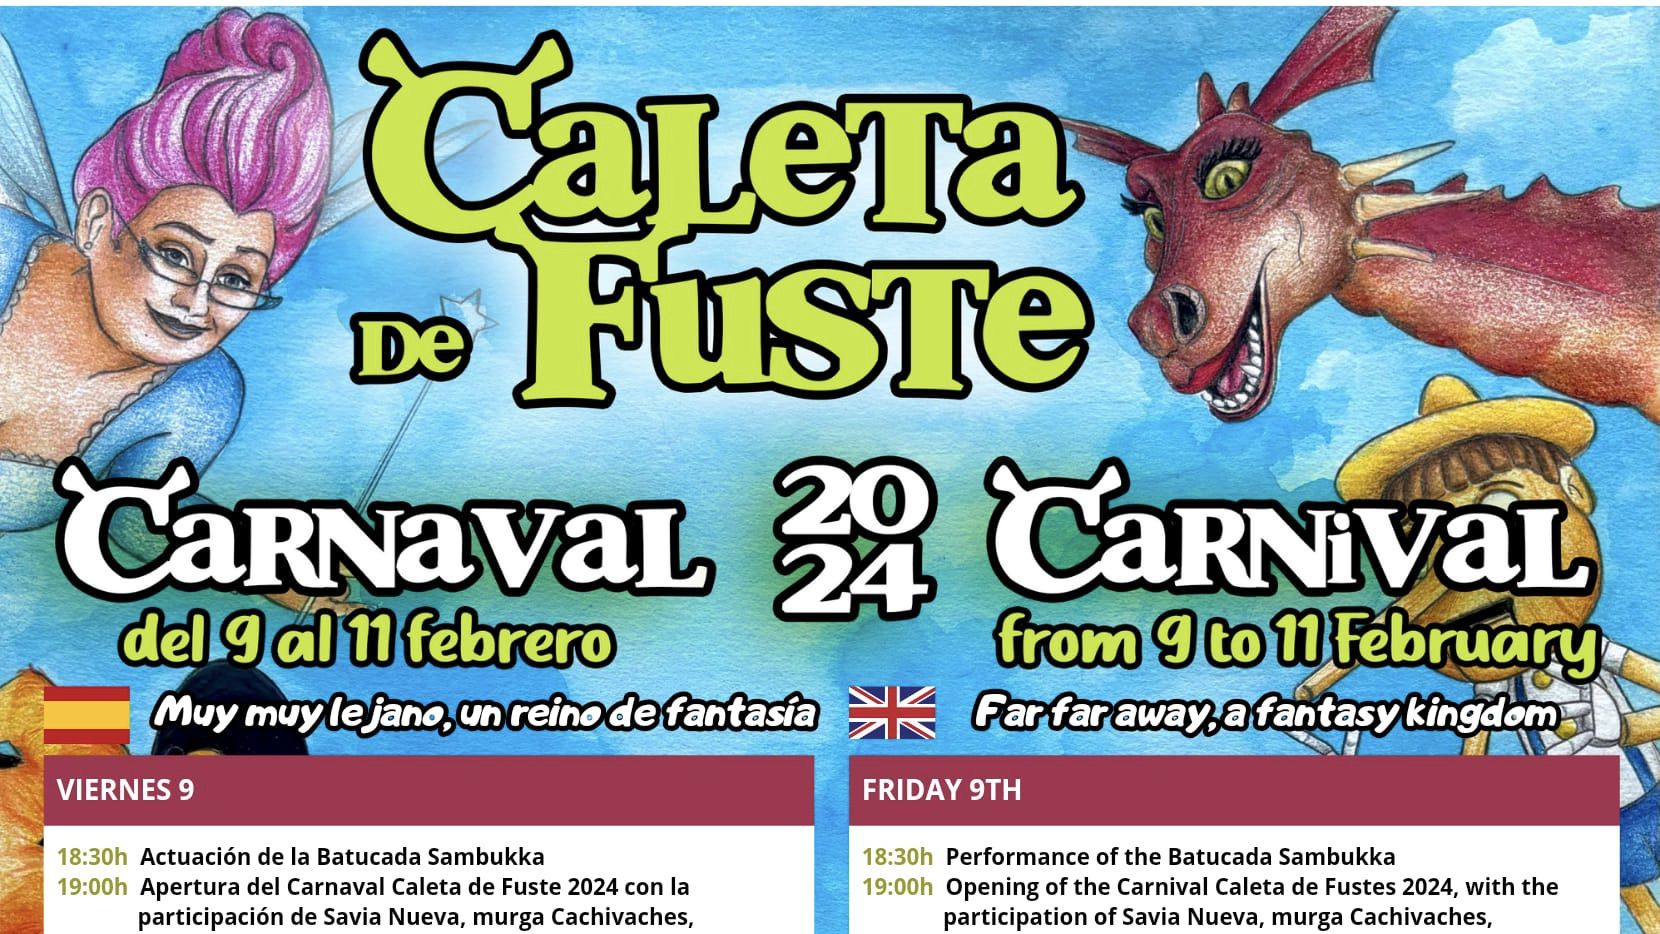 El Carnaval llega a Caleta de Fuste con un 'Muy muy lejano, reino de fantasía'